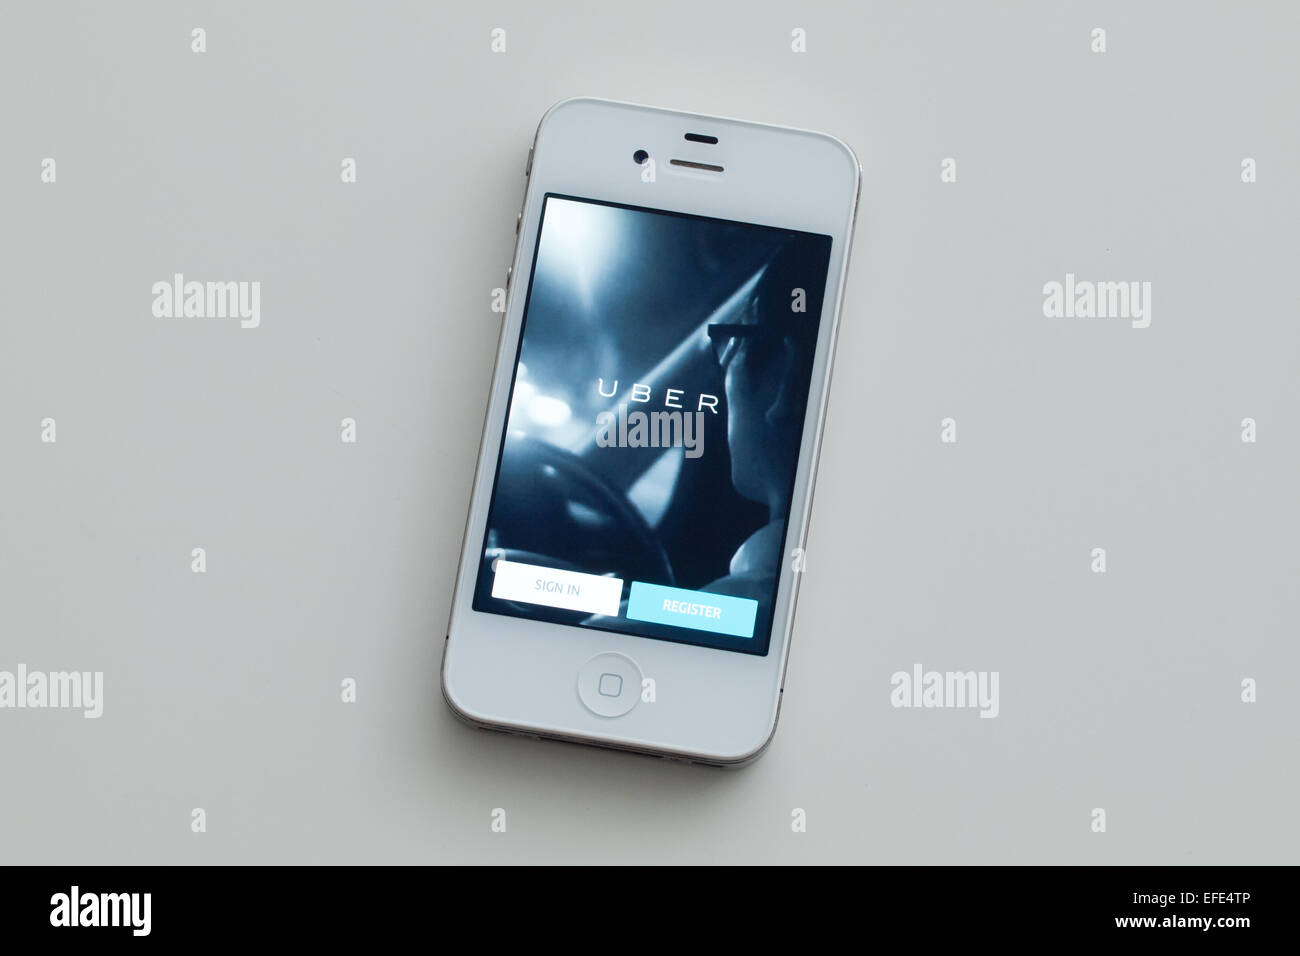 Una vista de la pantalla de inicio de la aplicación en un Uber blanco, Apple iPhone 4. Foto de stock